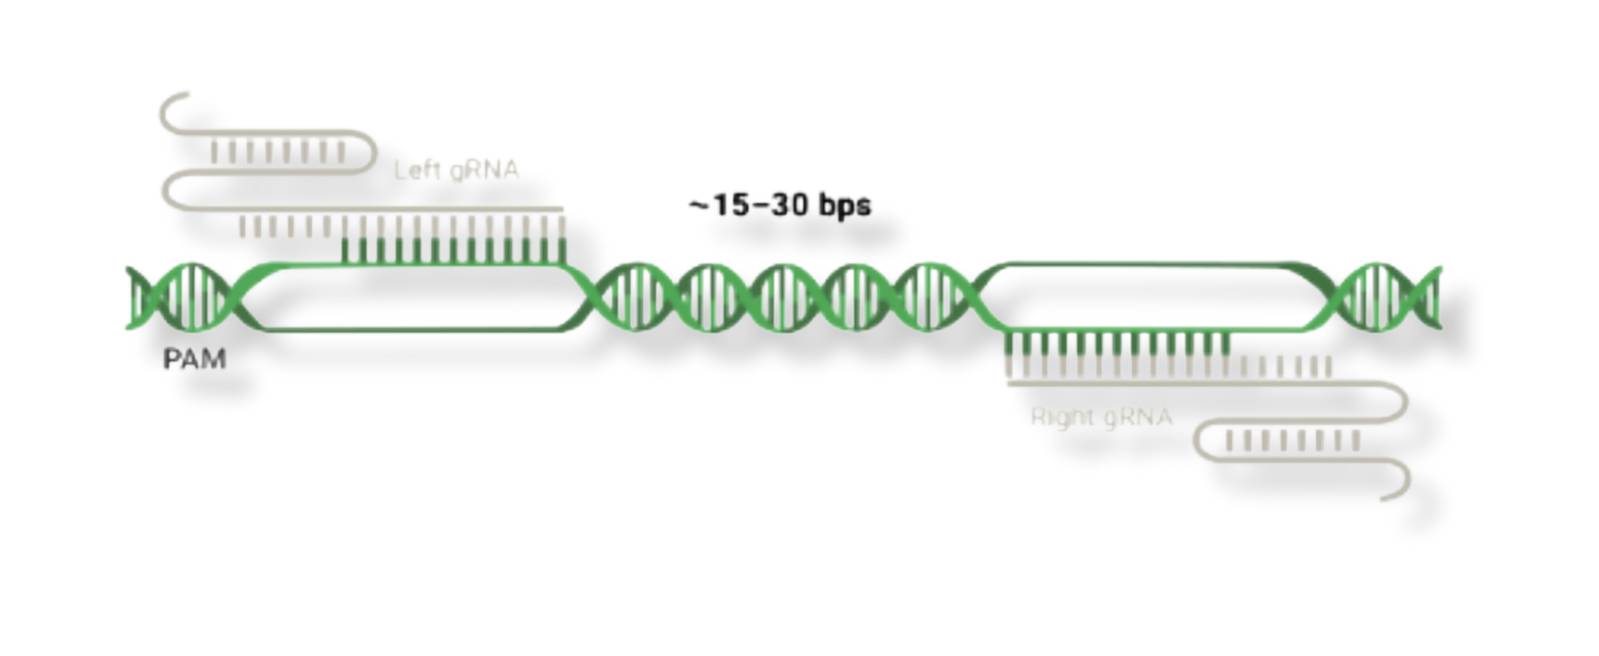 Guide RNA Bnr